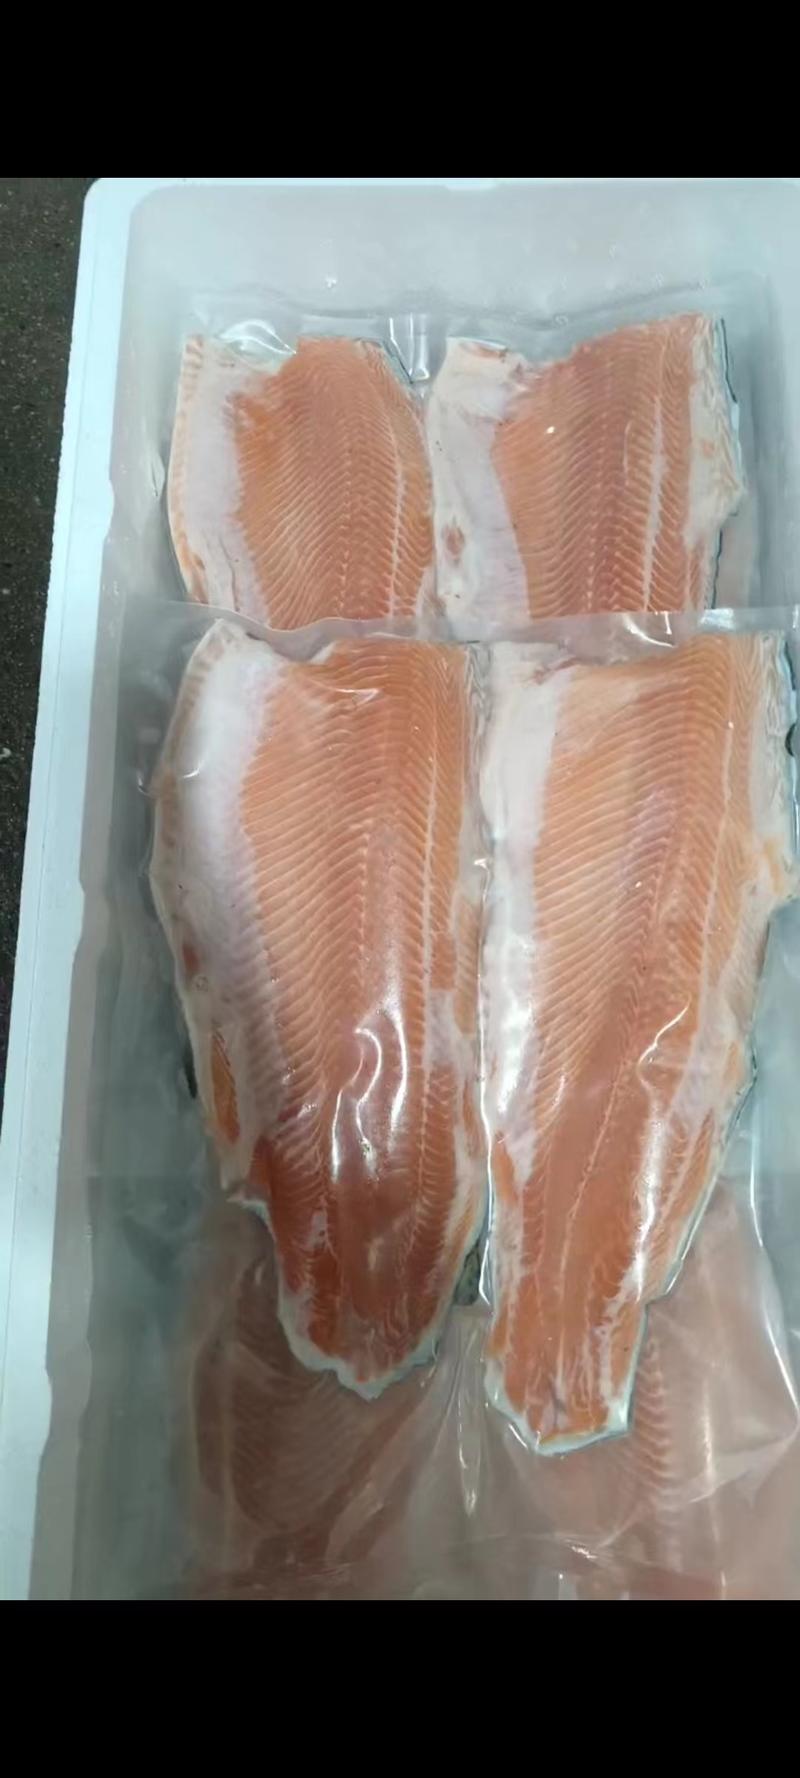 冰鲜三文鱼国产虹鳟鱼刺身海鲜生鱼片生吃